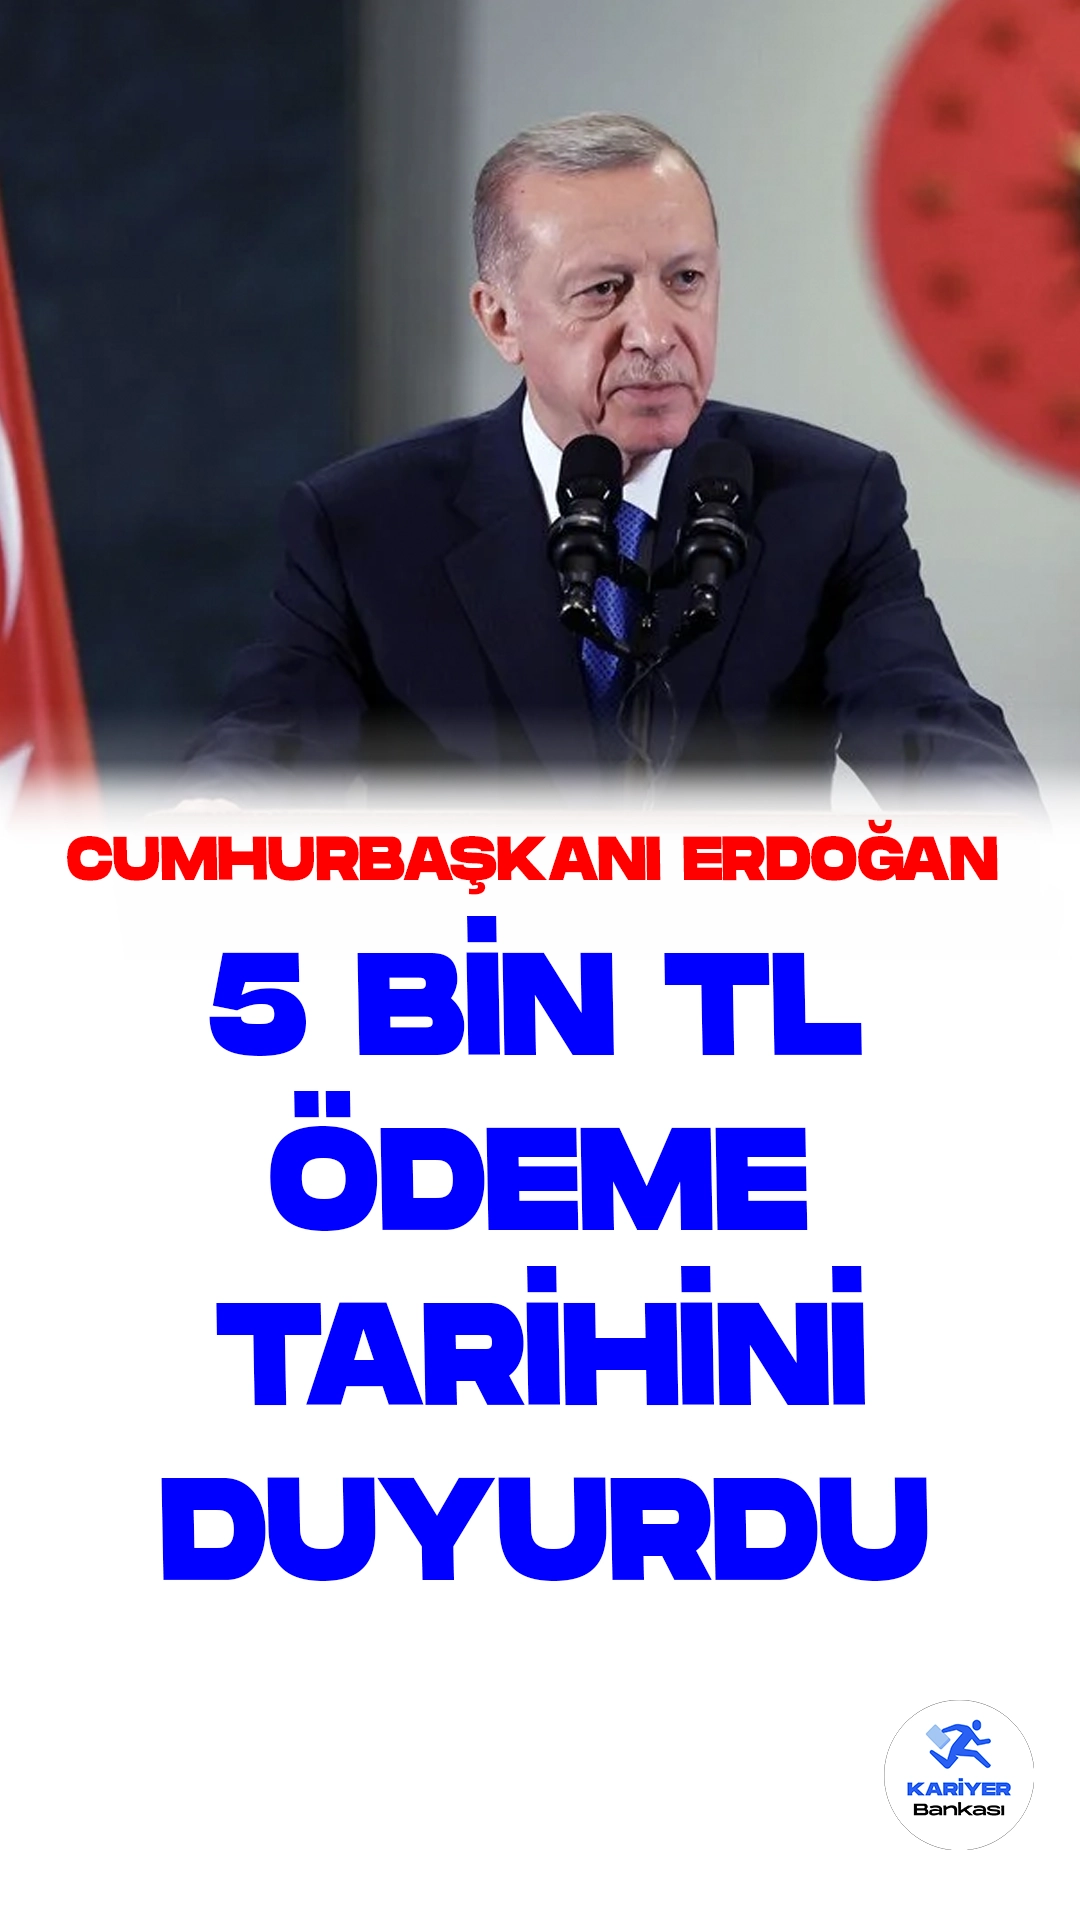 Cumhurbaşkanı Recep Tayyip Erdoğan Emeklilere 5 Bin Lira Ödeme Müjdesi Verdi.Cumhurbaşkanı Recep Tayyip Erdoğan, emeklilere yönelik müjdeli bir verdi.Kabine toplantısı sonrası yapılan açıklamada, emeklilere bir defaya mahsus olmak üzere 5 bin lira ödeme yapılacağını duyurdu.